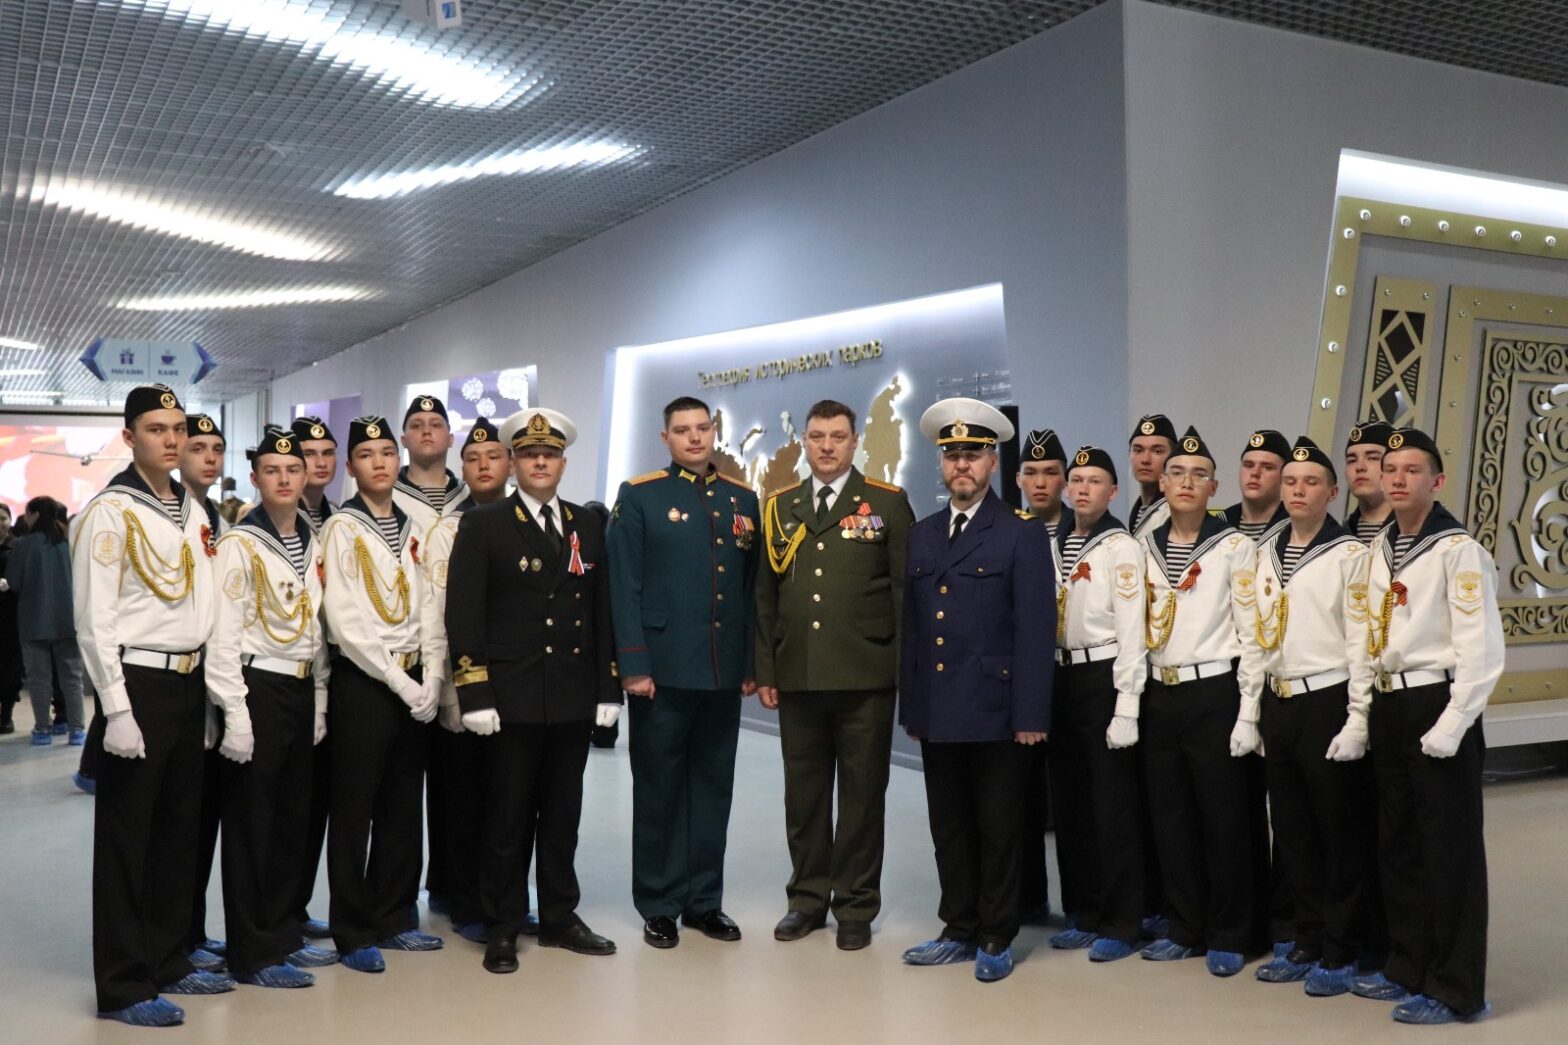 Выставка «Якутяне на страже Отечества «Сплав науки и отваги» открылась в Якутске